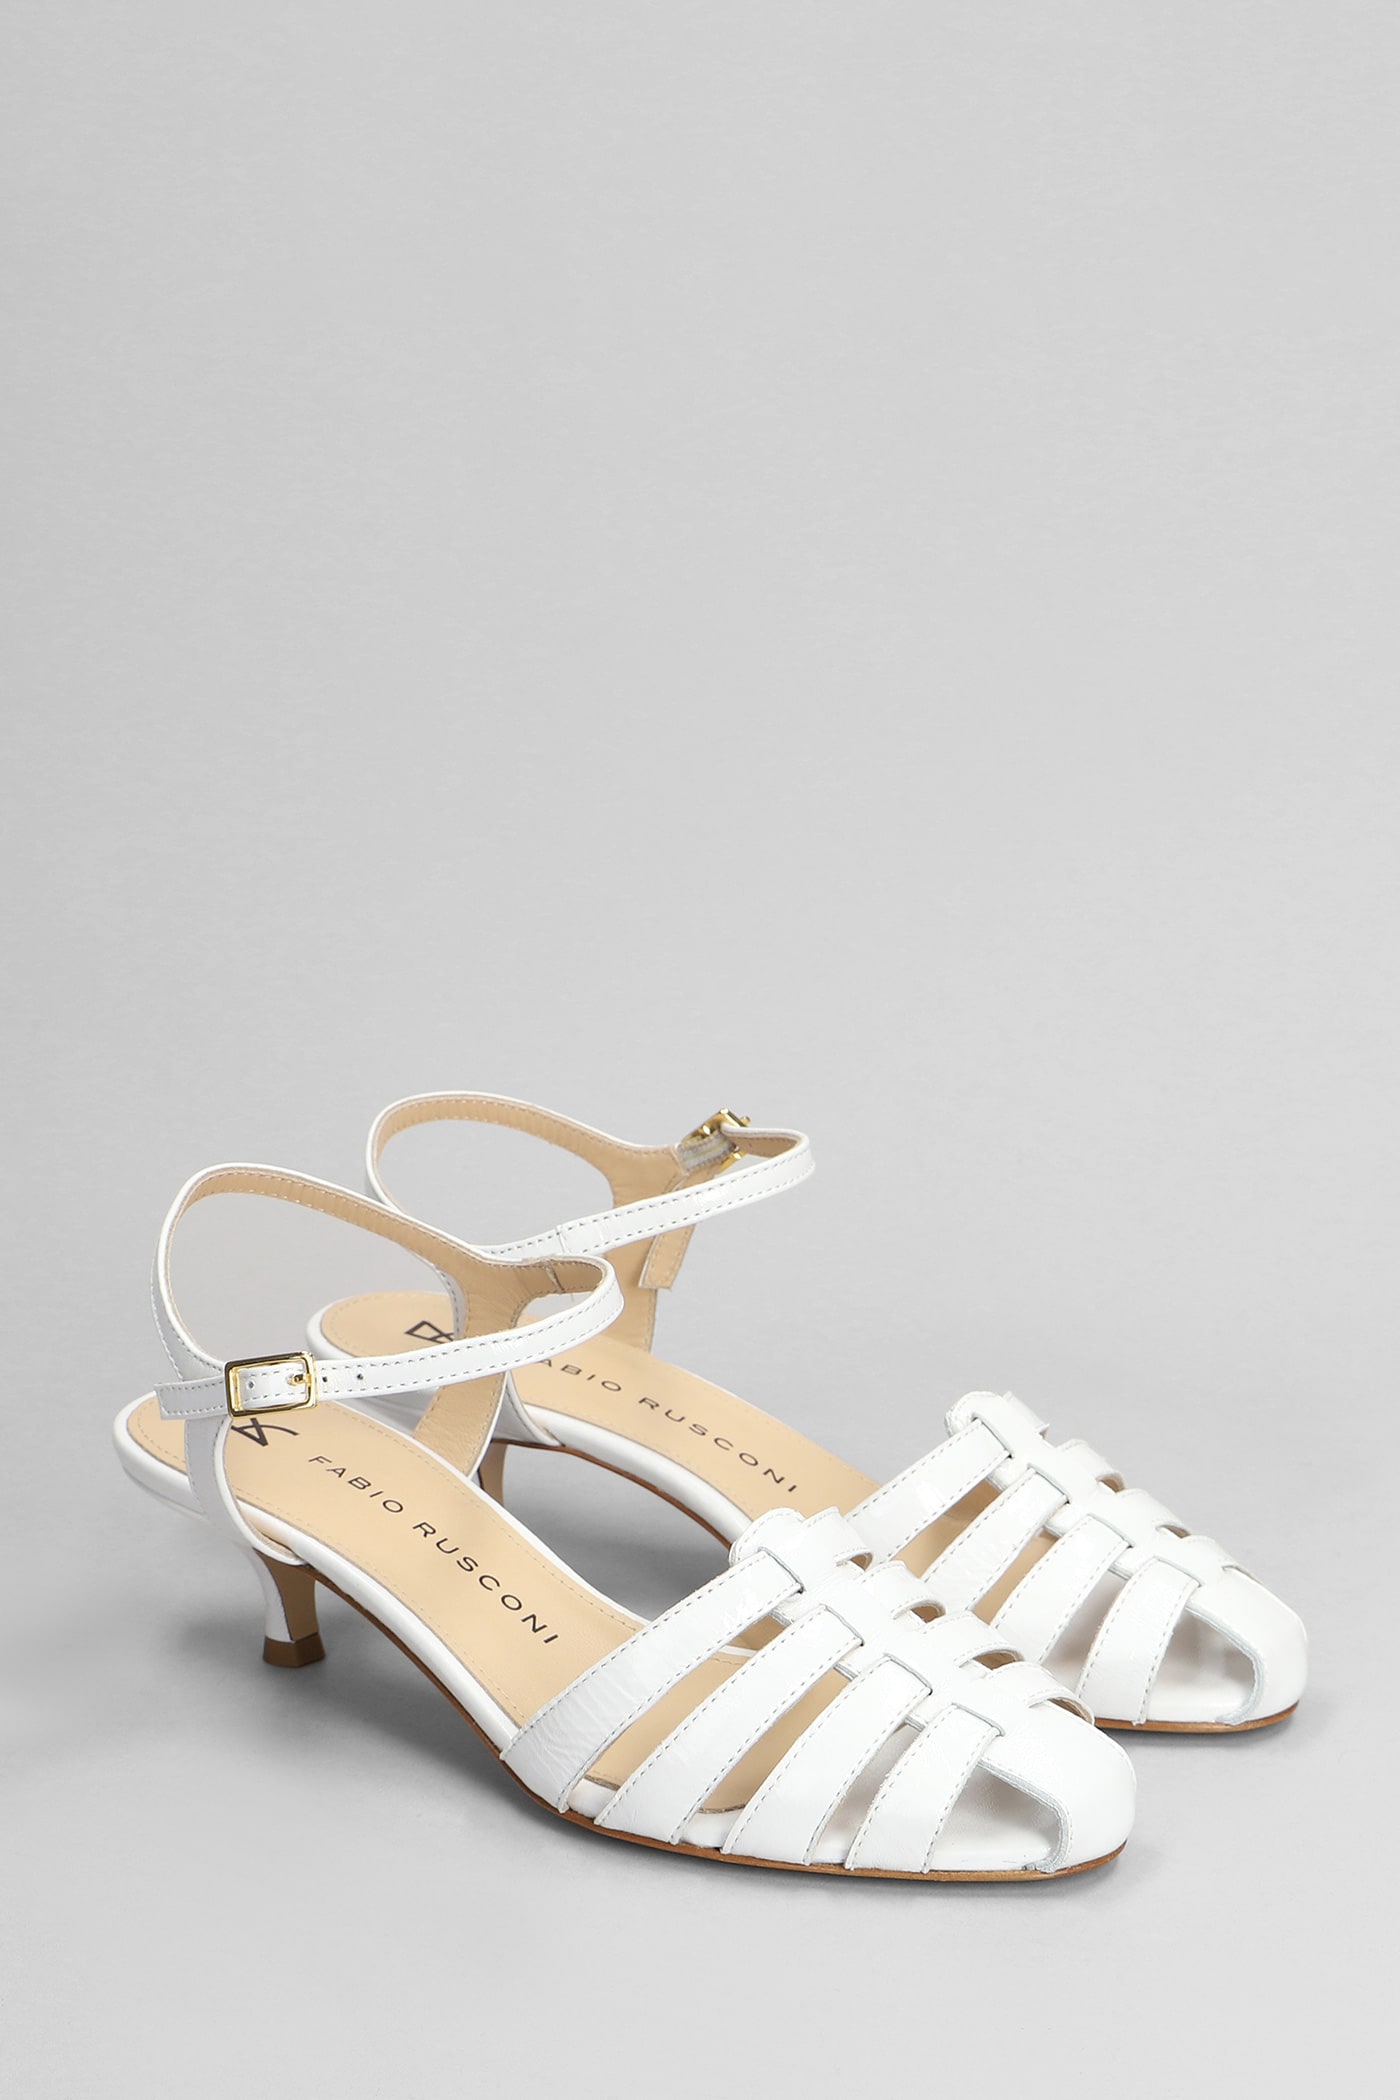 Shop Fabio Rusconi Sandals In White Leather